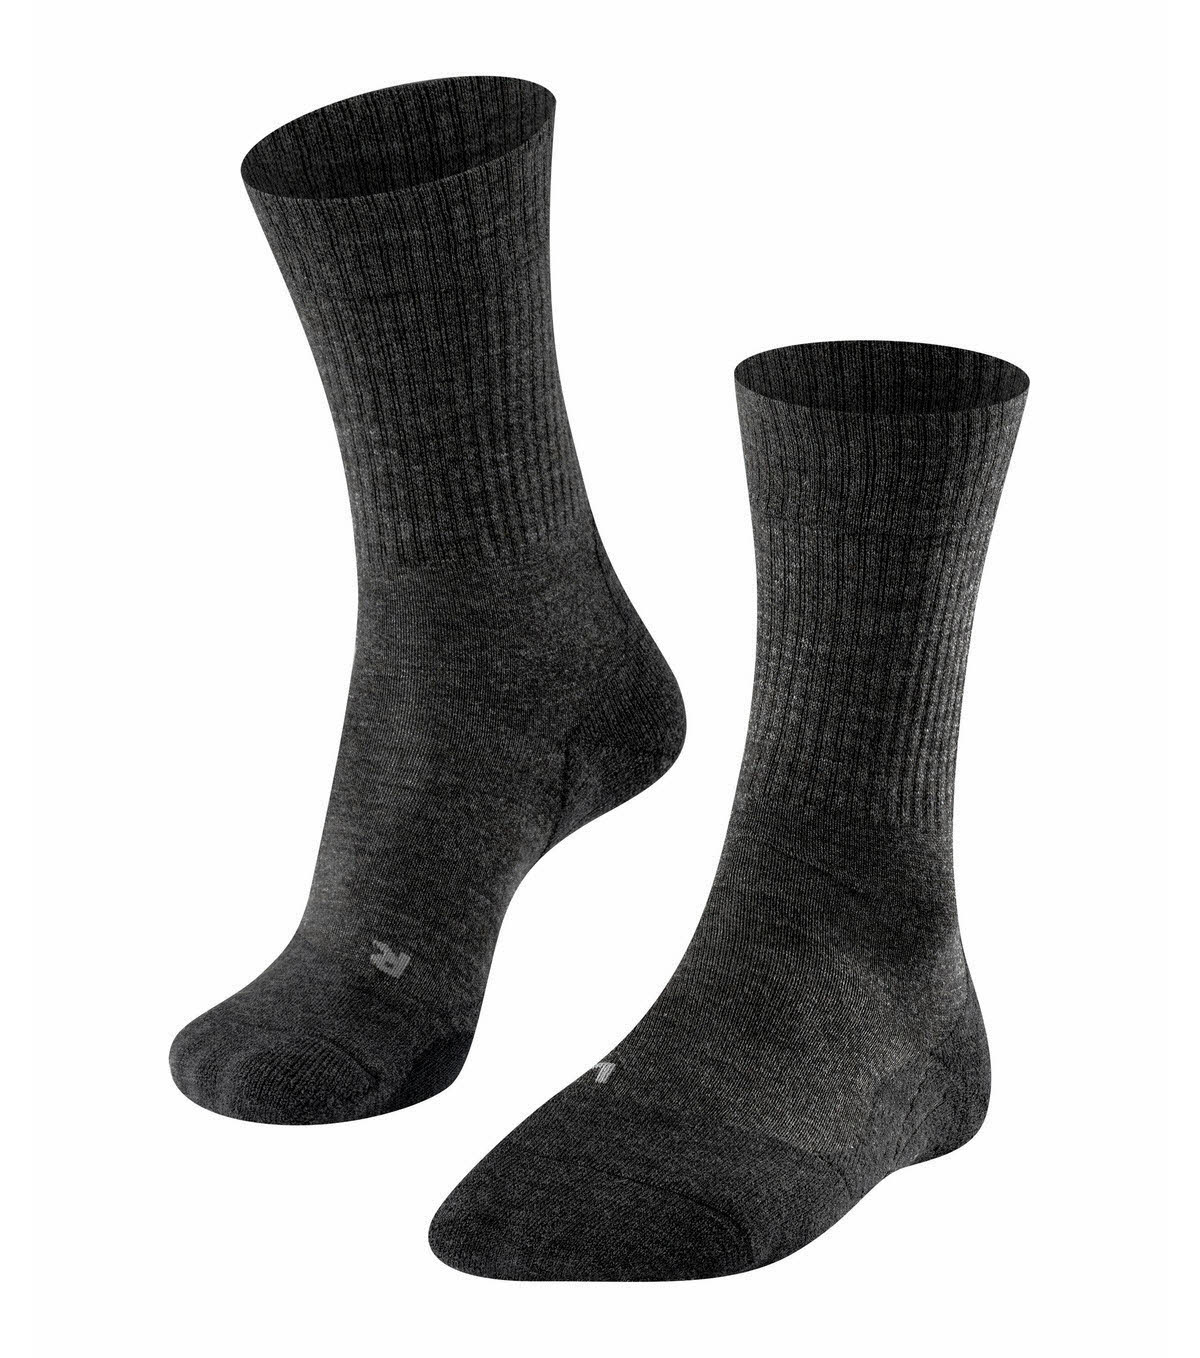 Falke TK2 Wool Herren Trekking Socken Sportsocken Wandersocken 1 Paar grau NEU